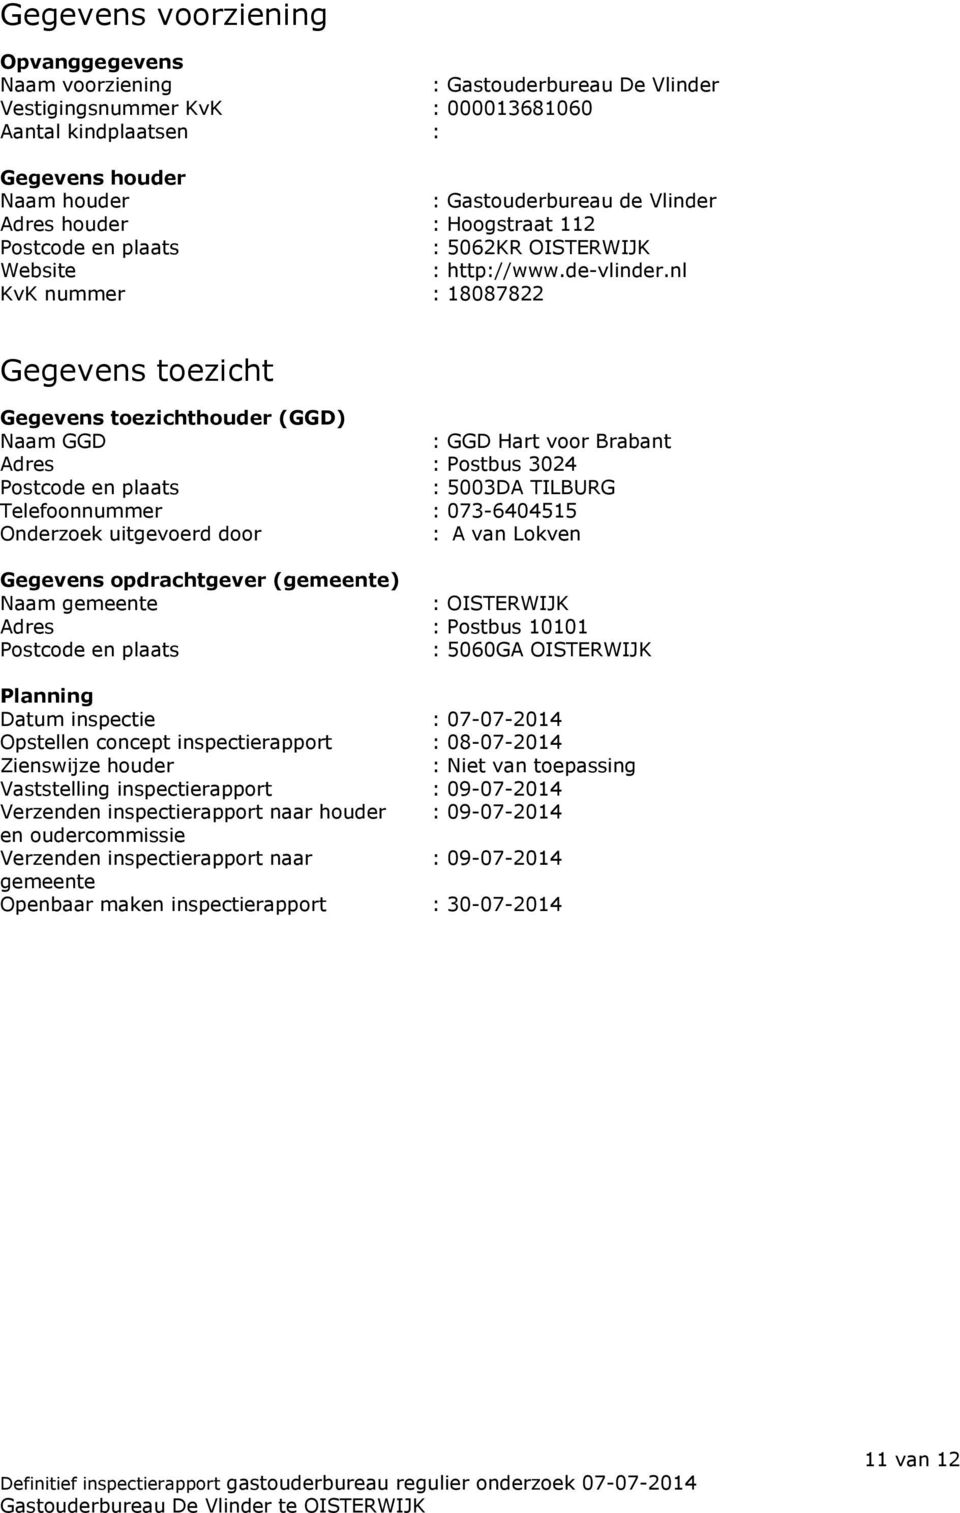 nl KvK nummer : 18087822 Gegevens toezicht Gegevens toezichthouder (GGD) Naam GGD : GGD Hart voor Brabant Adres : Postbus 3024 Postcode en plaats : 5003DA TILBURG Telefoonnummer : 073-6404515